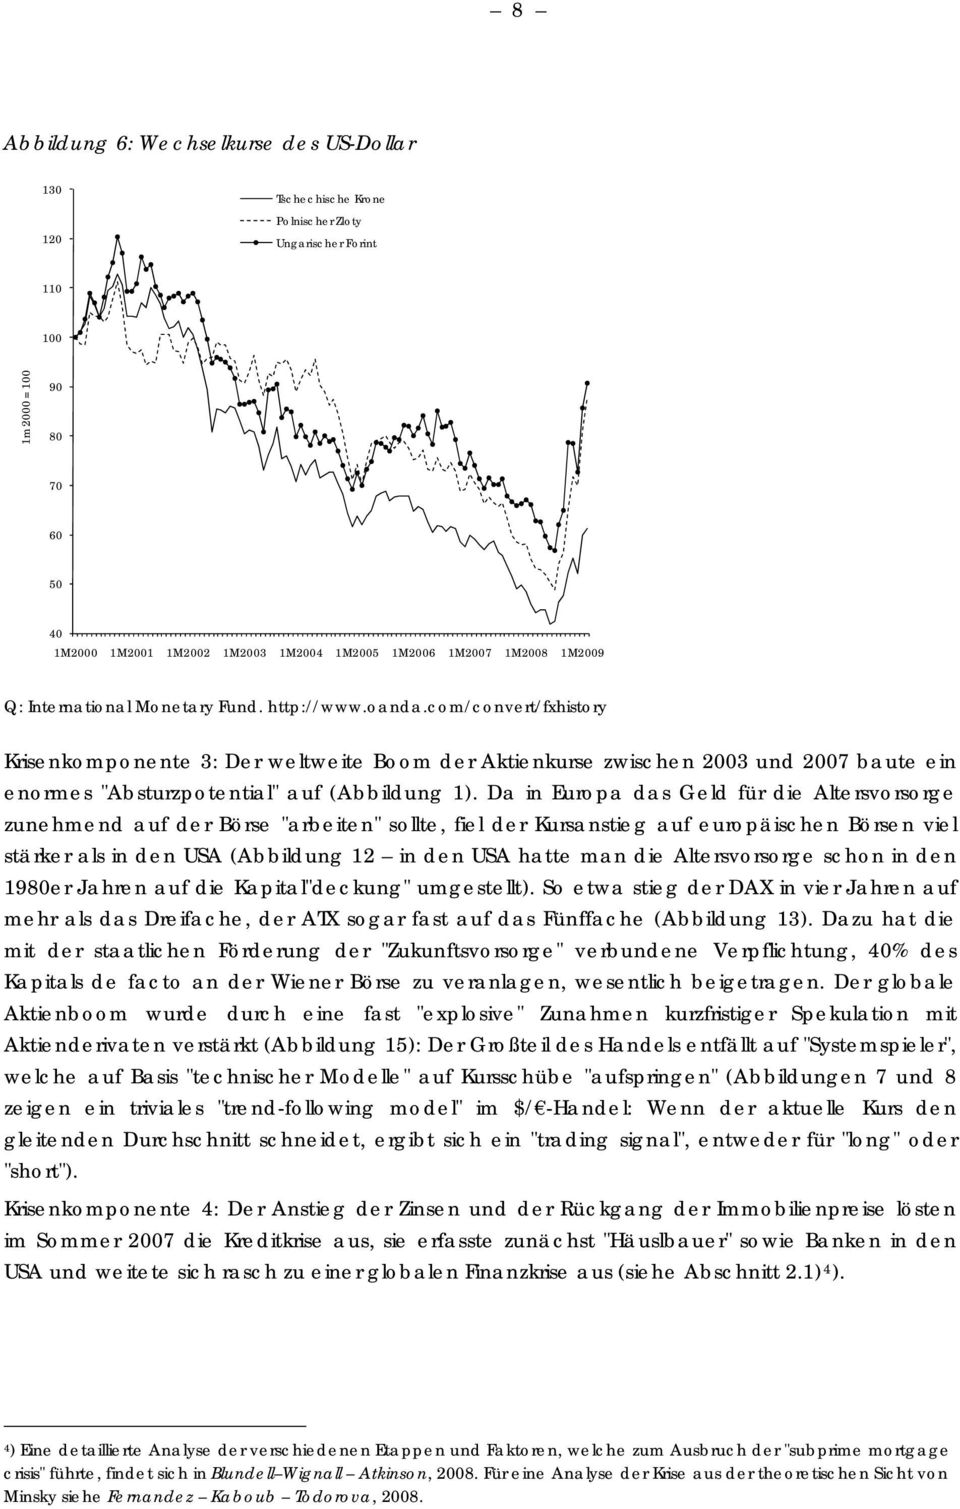 com/convert/fxhistory Krisenkomponente 3: Der weltweite Boom der Aktienkurse zwischen 2003 und 2007 baute ein enormes "Absturzpotential" auf (Abbildung 1).